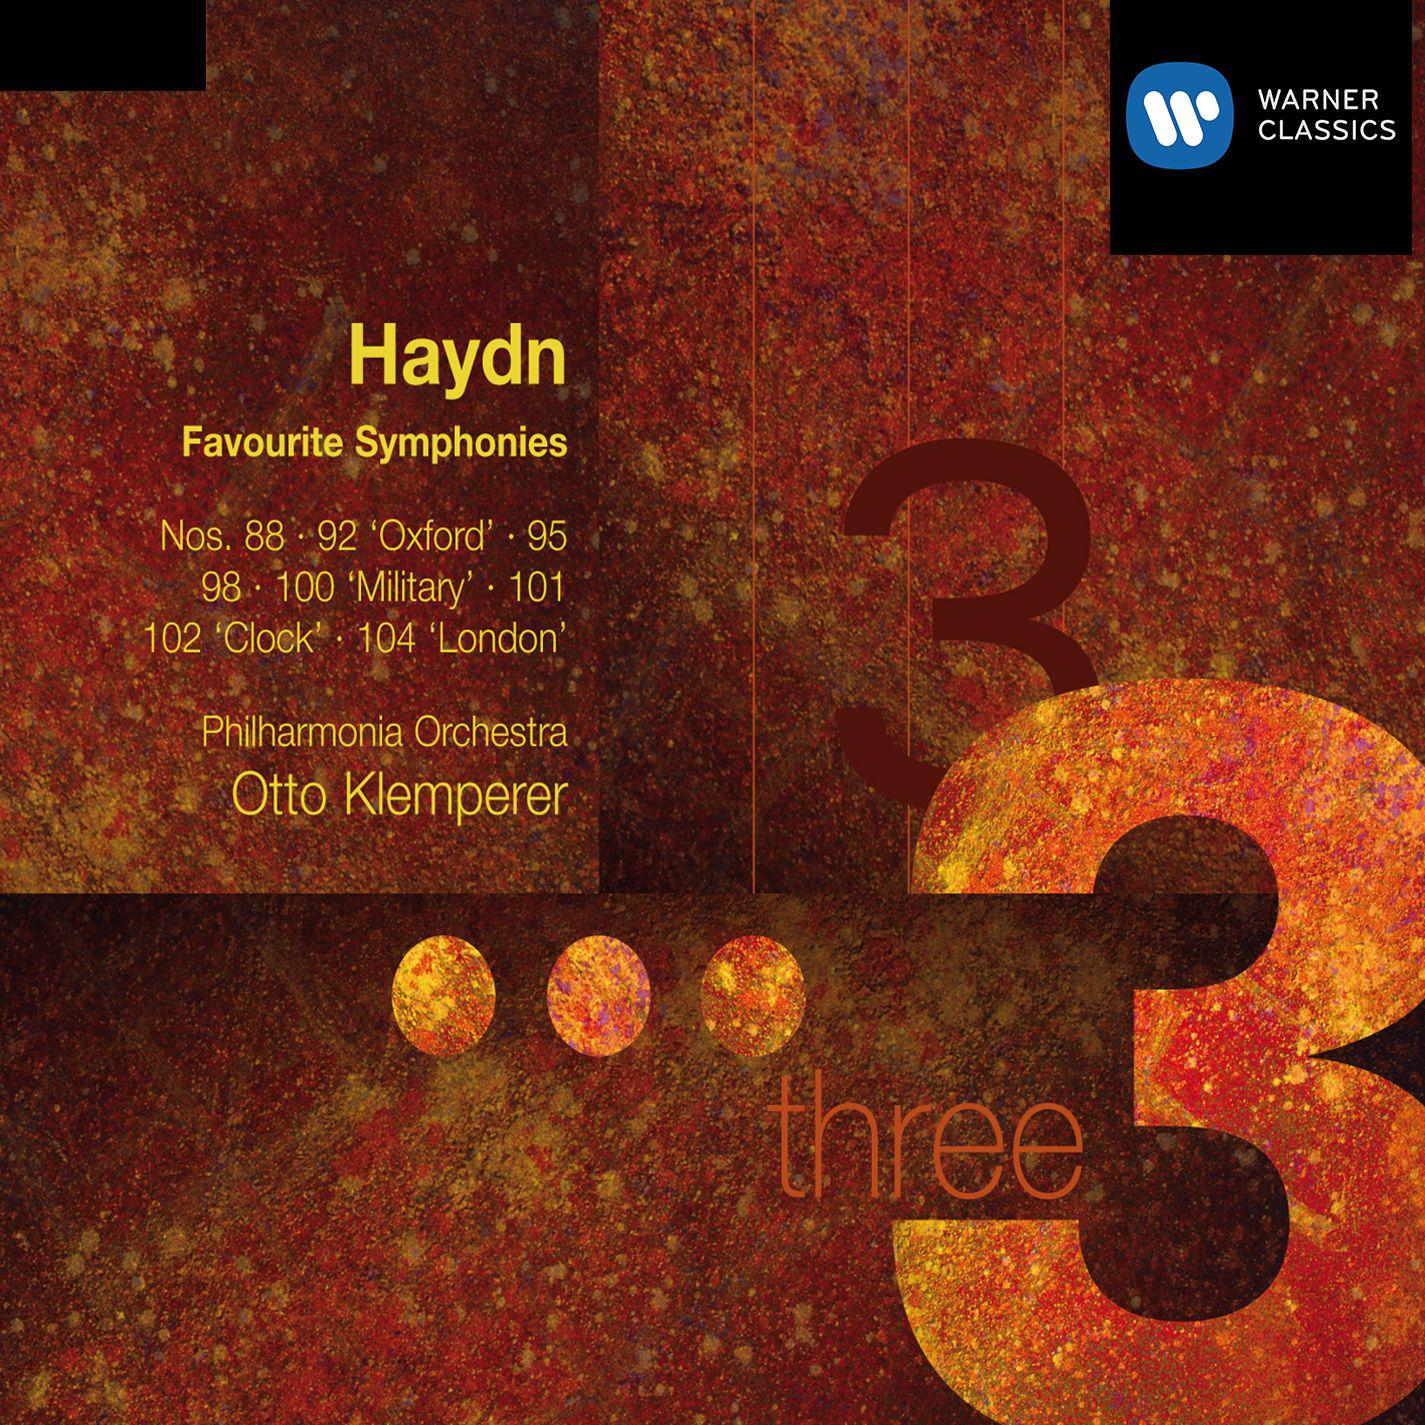 Symphony No. 98 in B-Flat Major, Hob. I:98: III. Menuetto - Trio